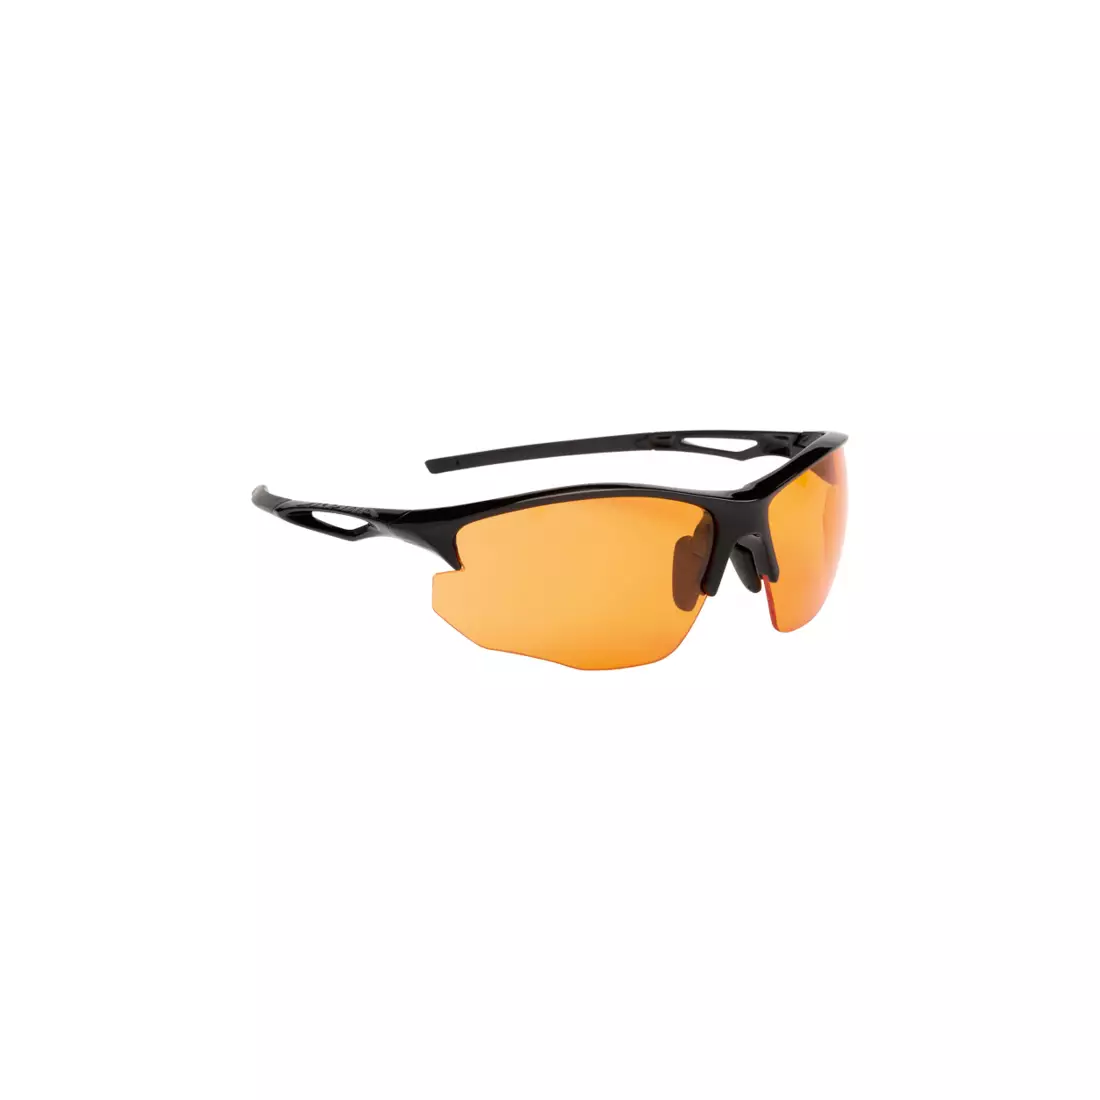 Sportovní brýle ALPINA - SORCERY HR C+, matná černá / oranžové mlhovky.